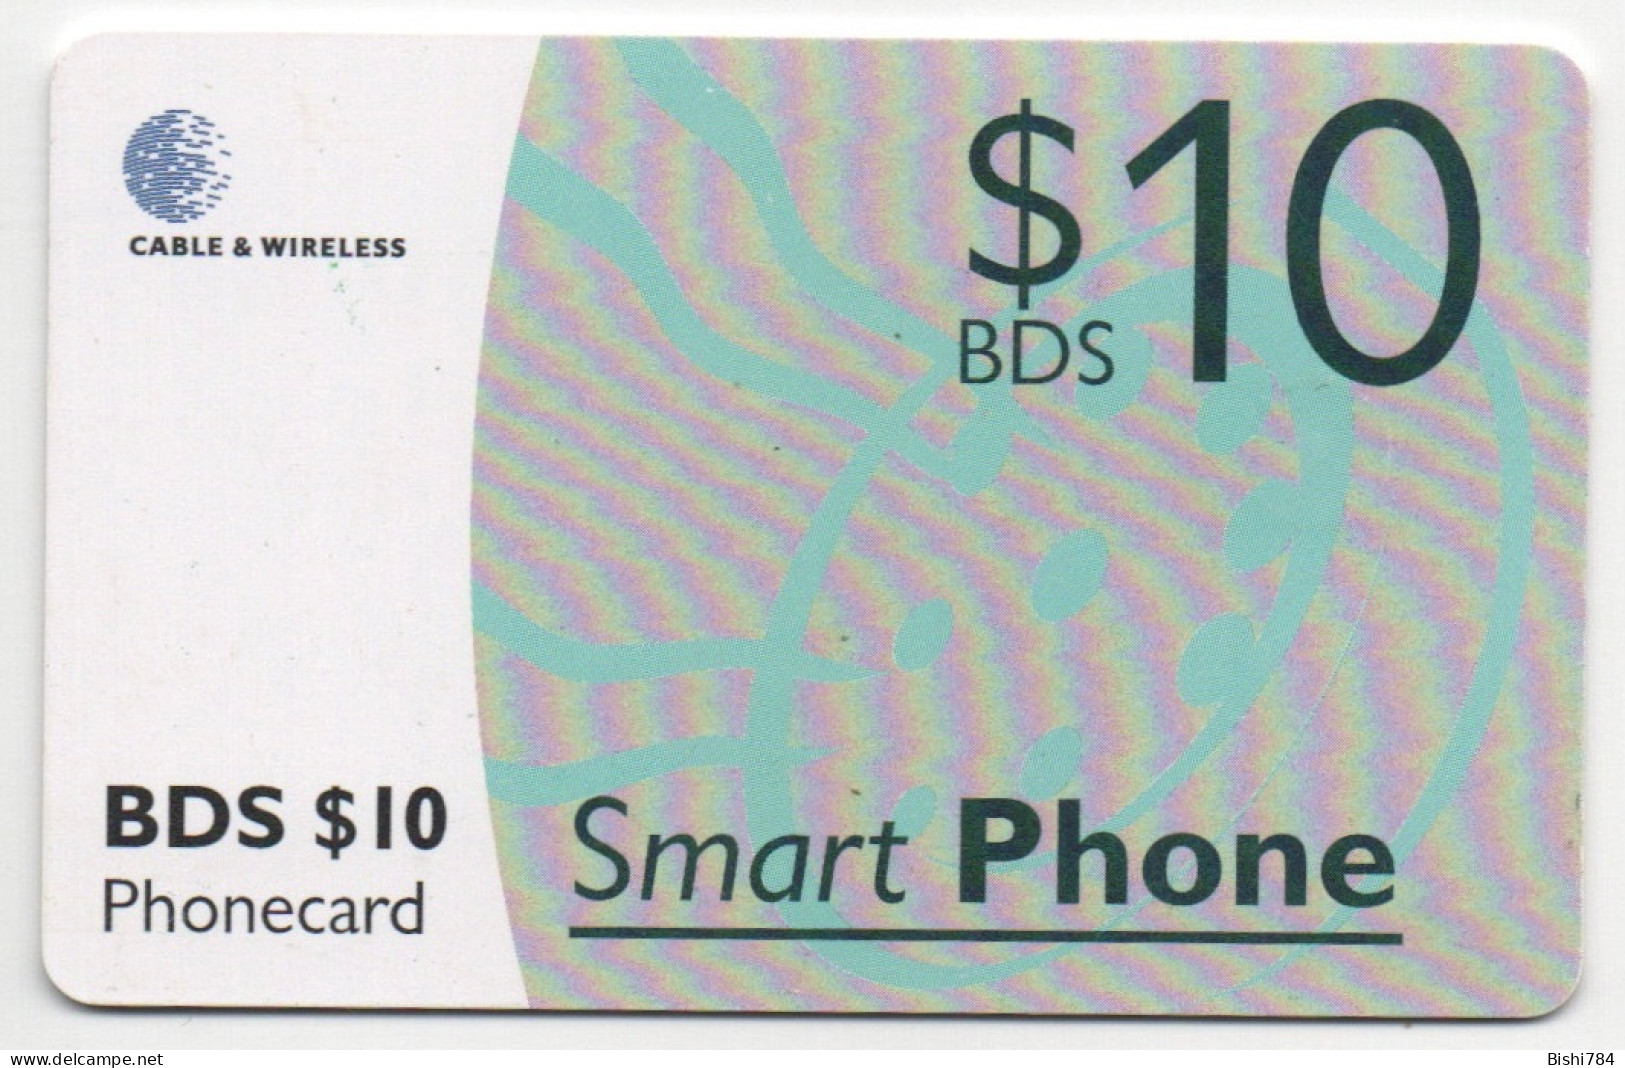 Barbados - SmartPhone $10 (Black Chip) - Barbades